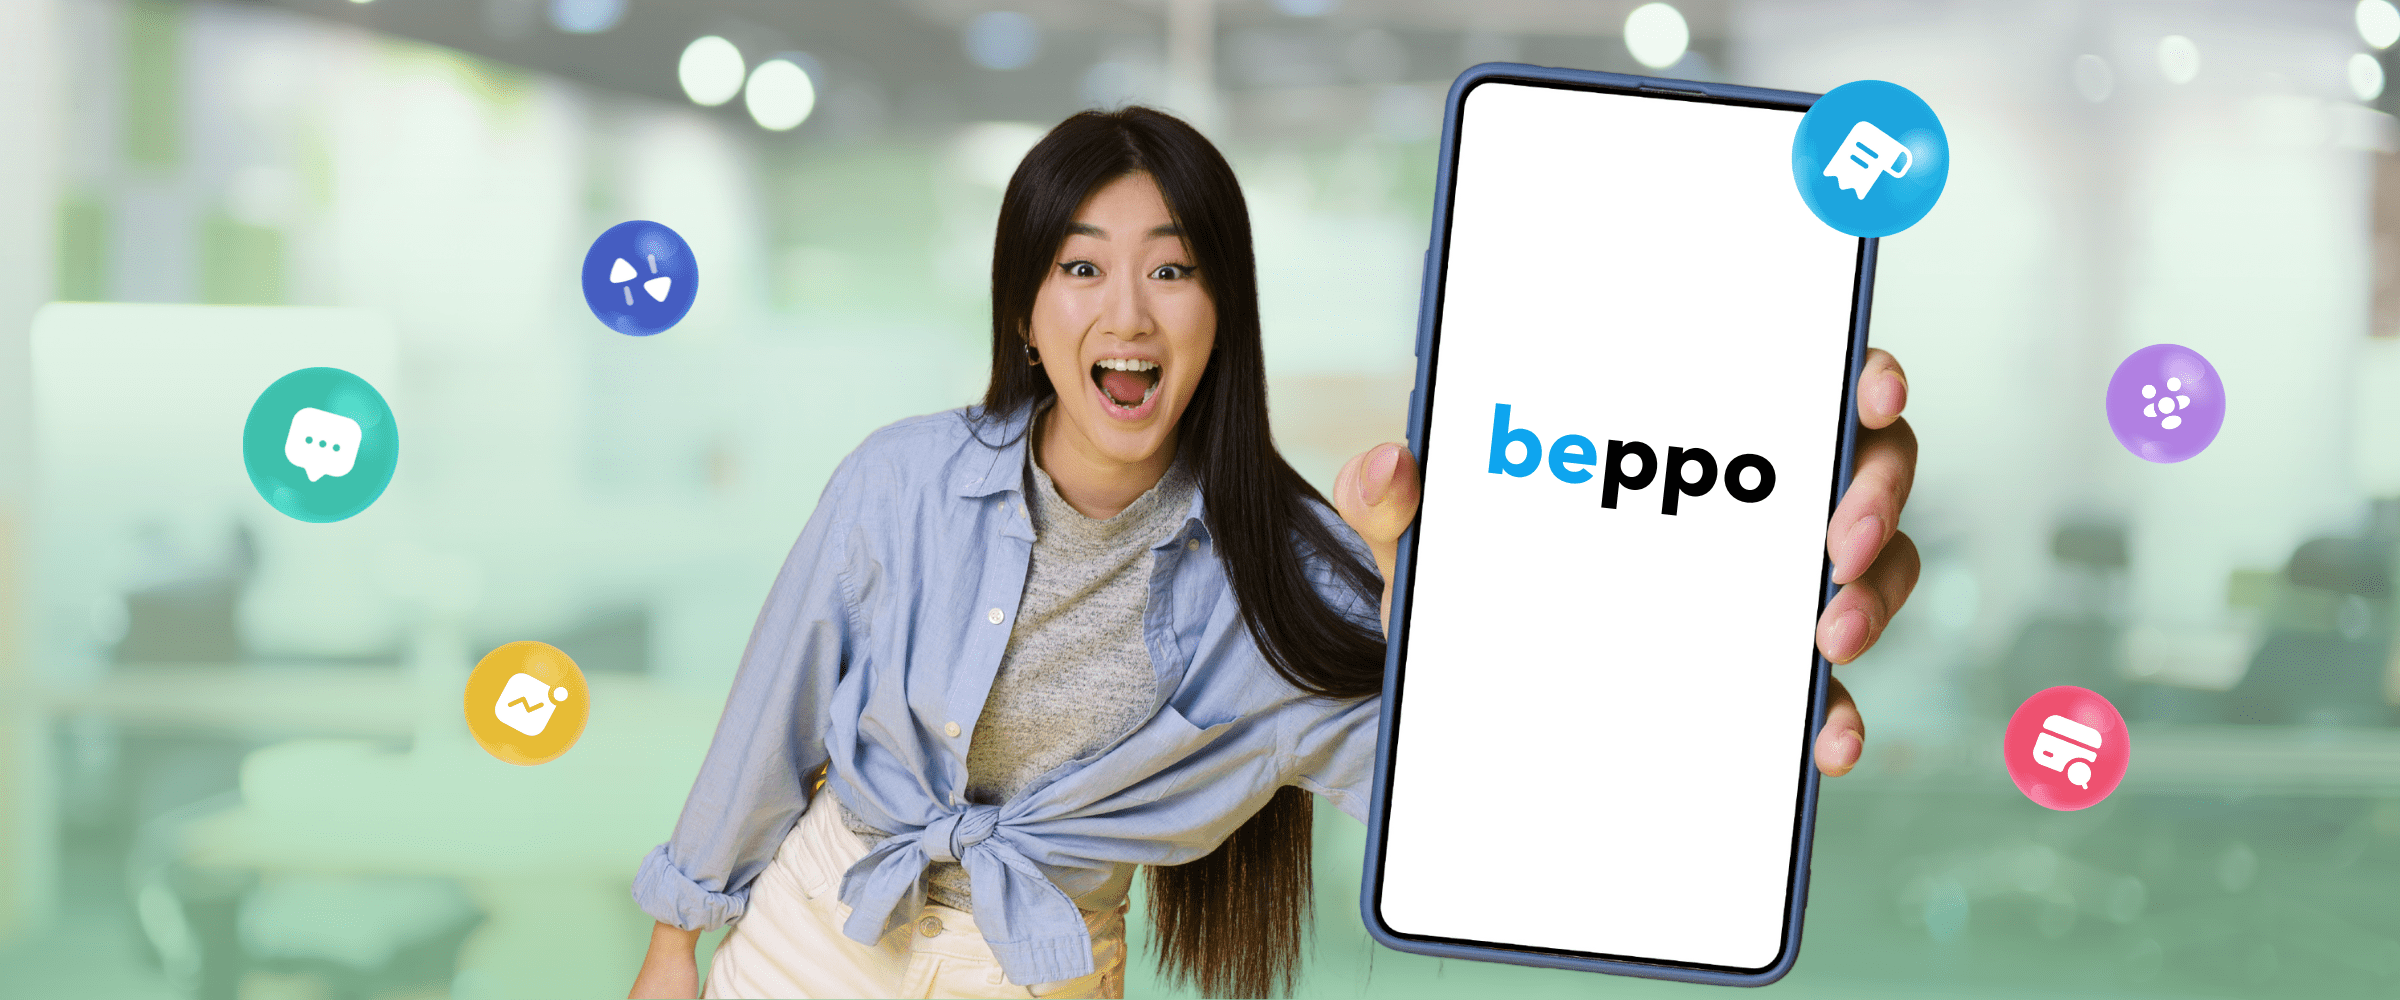 Beppo App service digital invoice